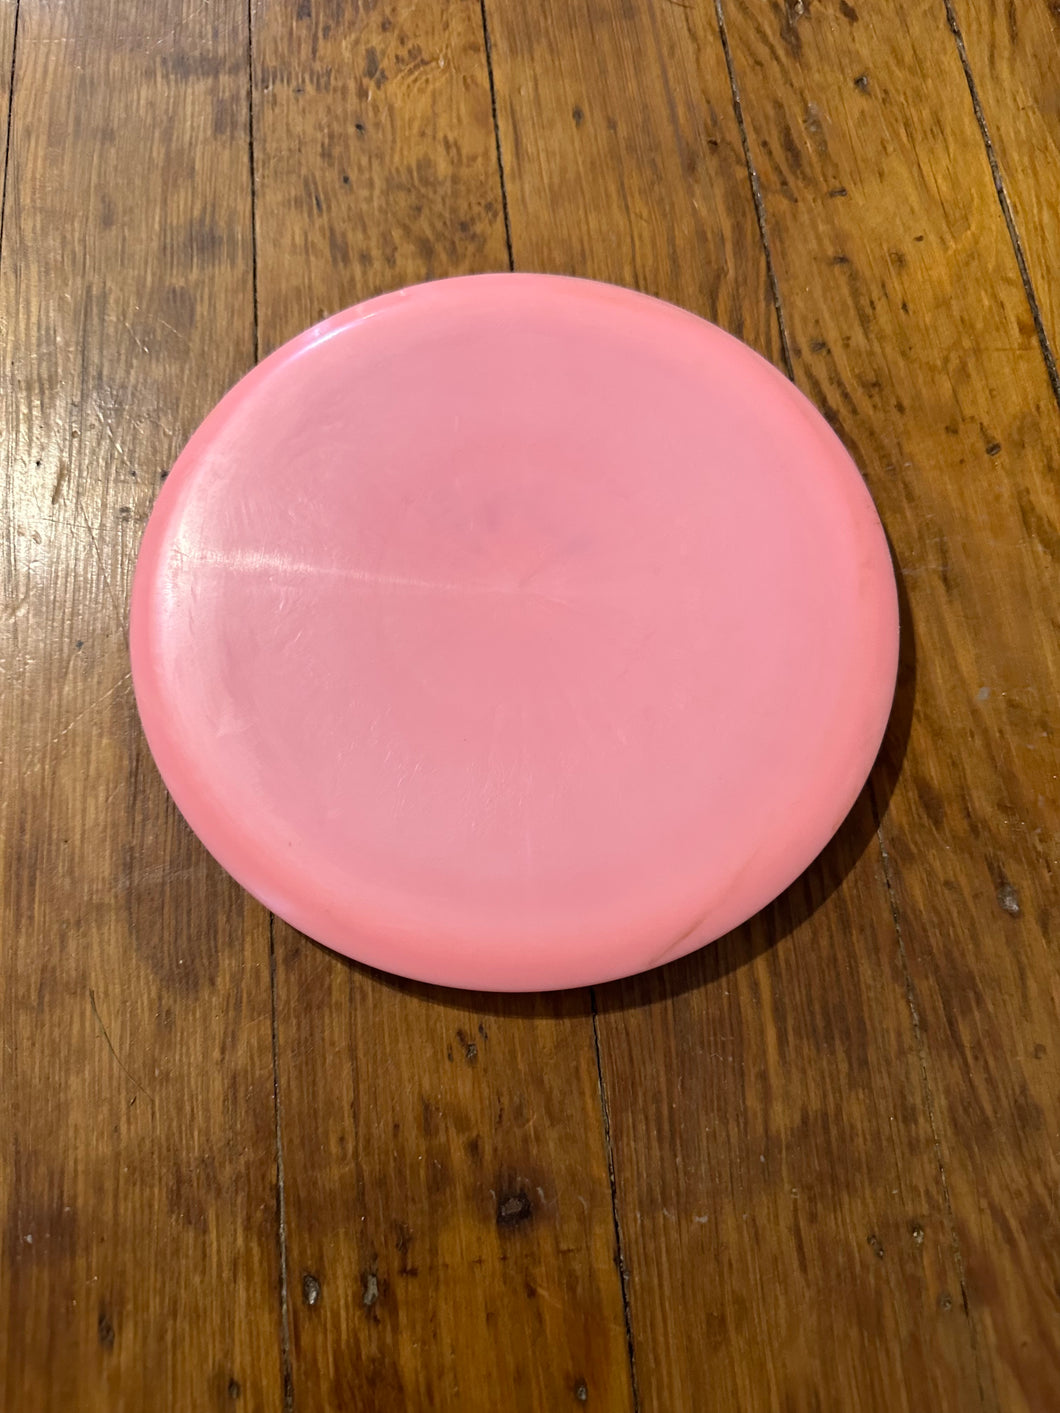 AGL Discs Magnolia Midrange Driver pink 178g